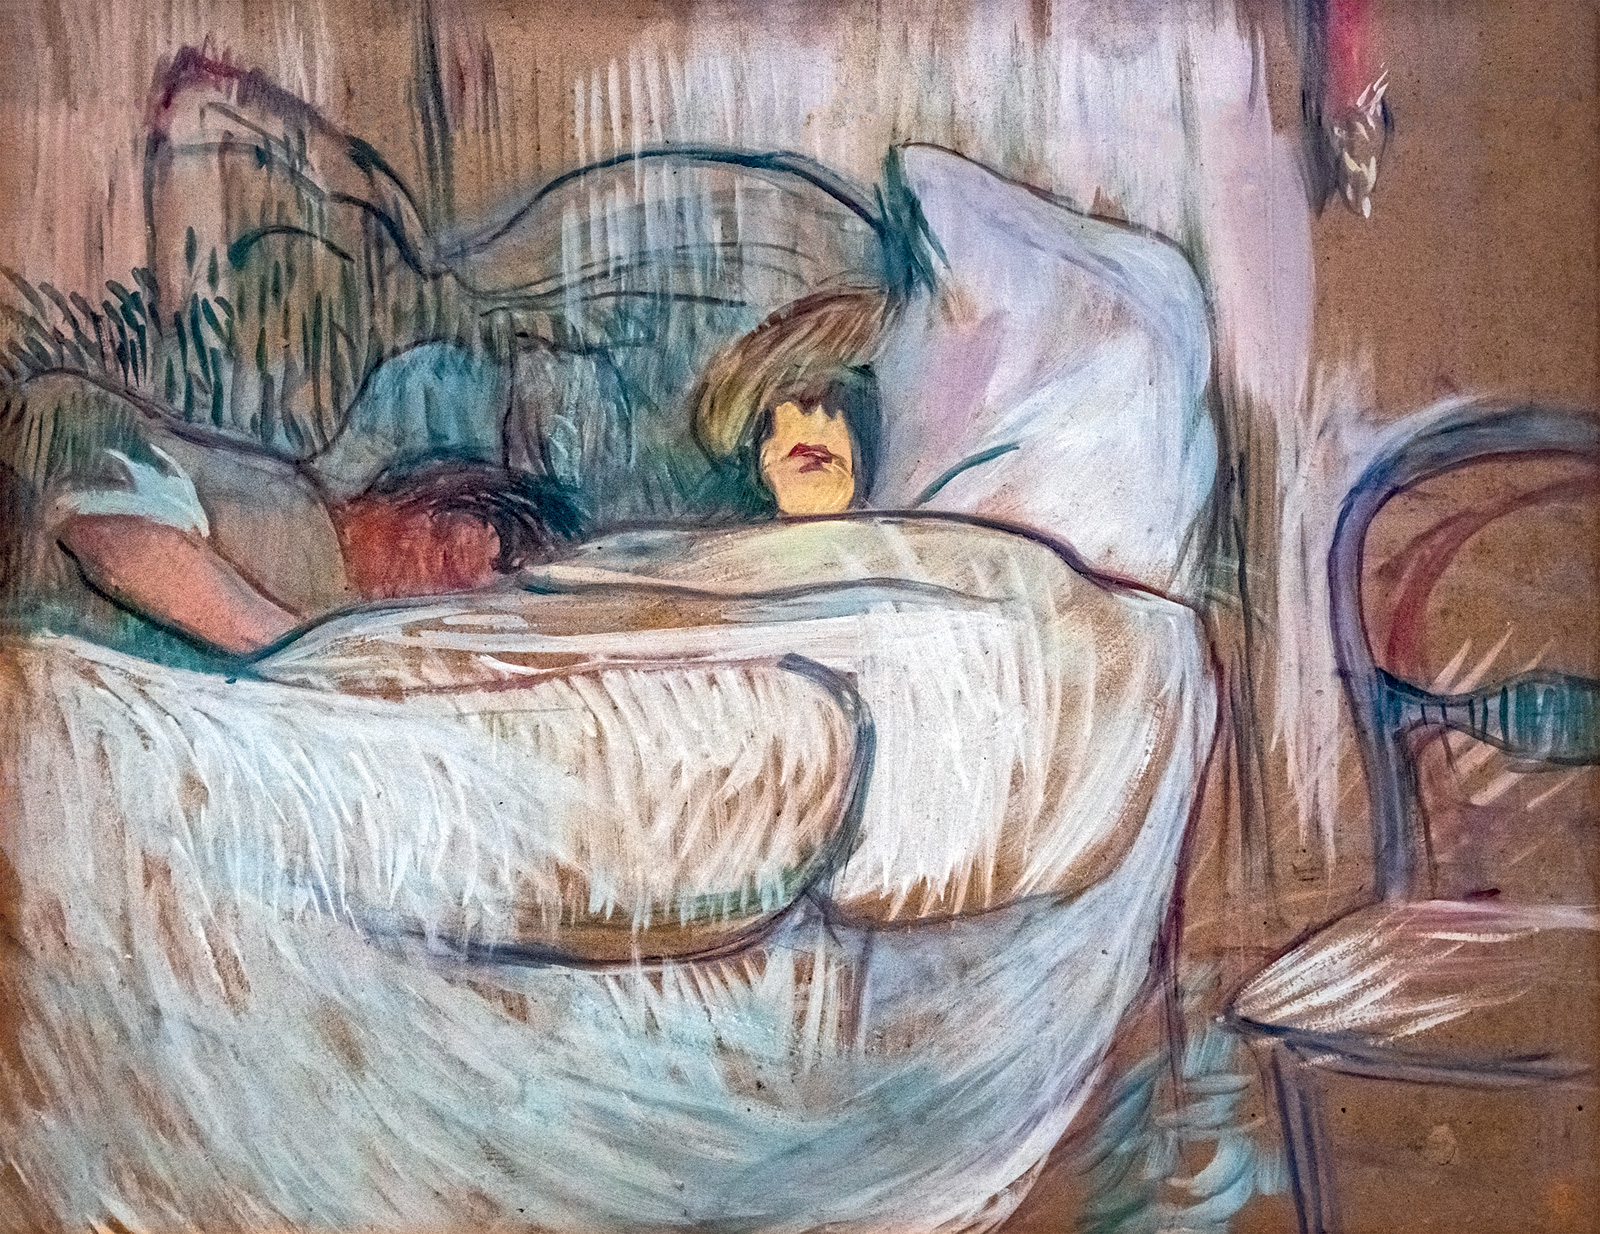 Henri de Toulouse-Lautrec, *En la cama*, 1894. Musée Toulouse-Lautrec